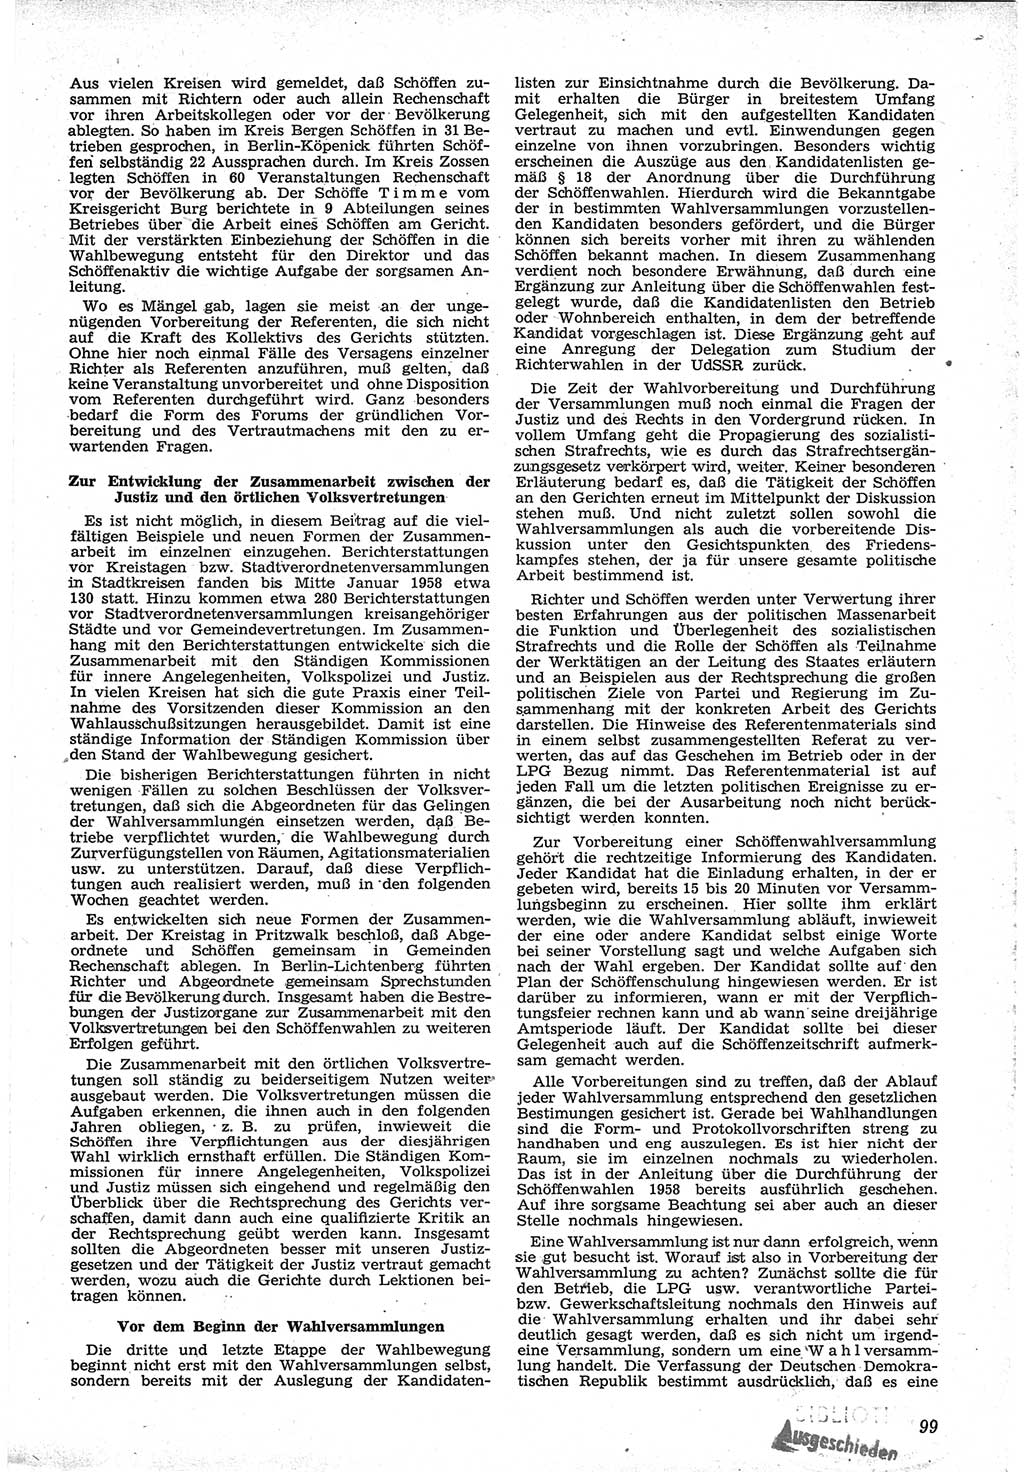 Neue Justiz (NJ), Zeitschrift für Recht und Rechtswissenschaft [Deutsche Demokratische Republik (DDR)], 12. Jahrgang 1958, Seite 99 (NJ DDR 1958, S. 99)